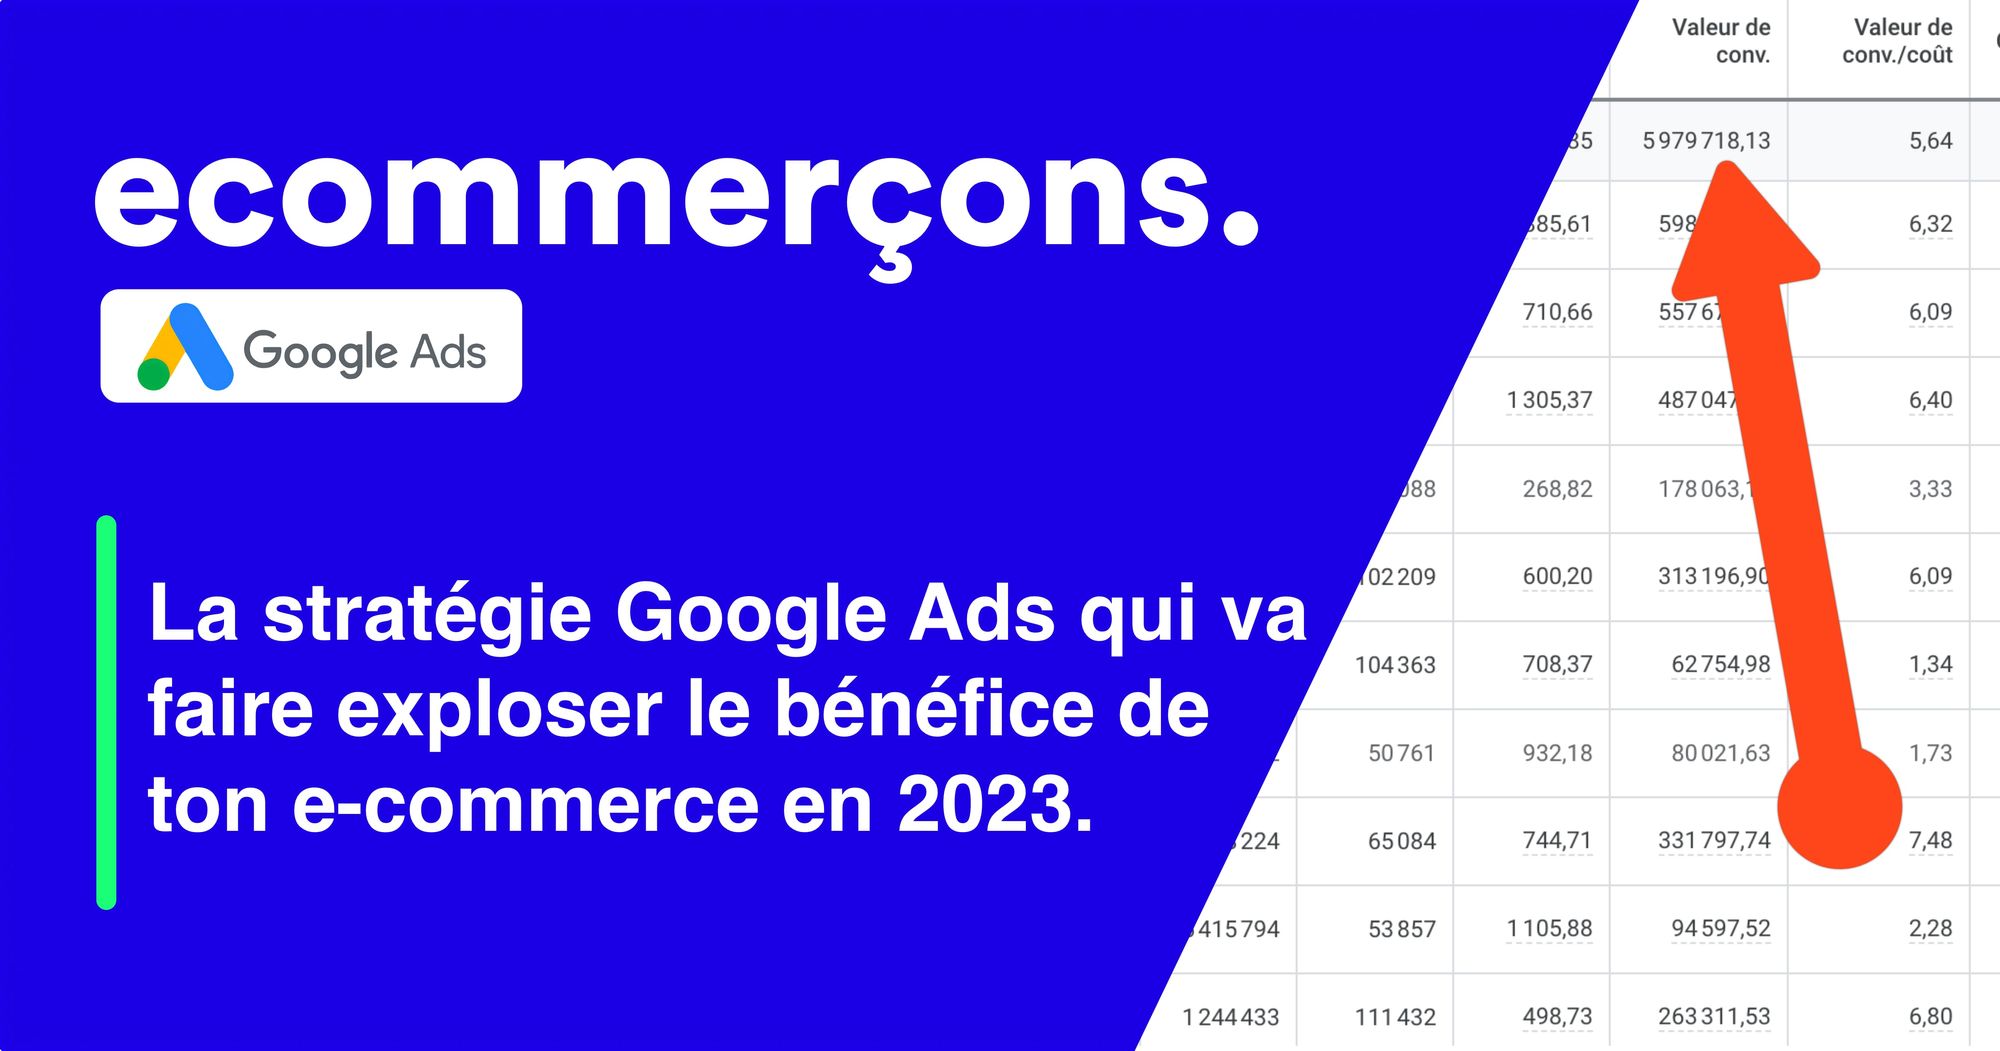 La stratégie Google Ads qui va faire exploser le bénéfice de ton e-commerce en 2023